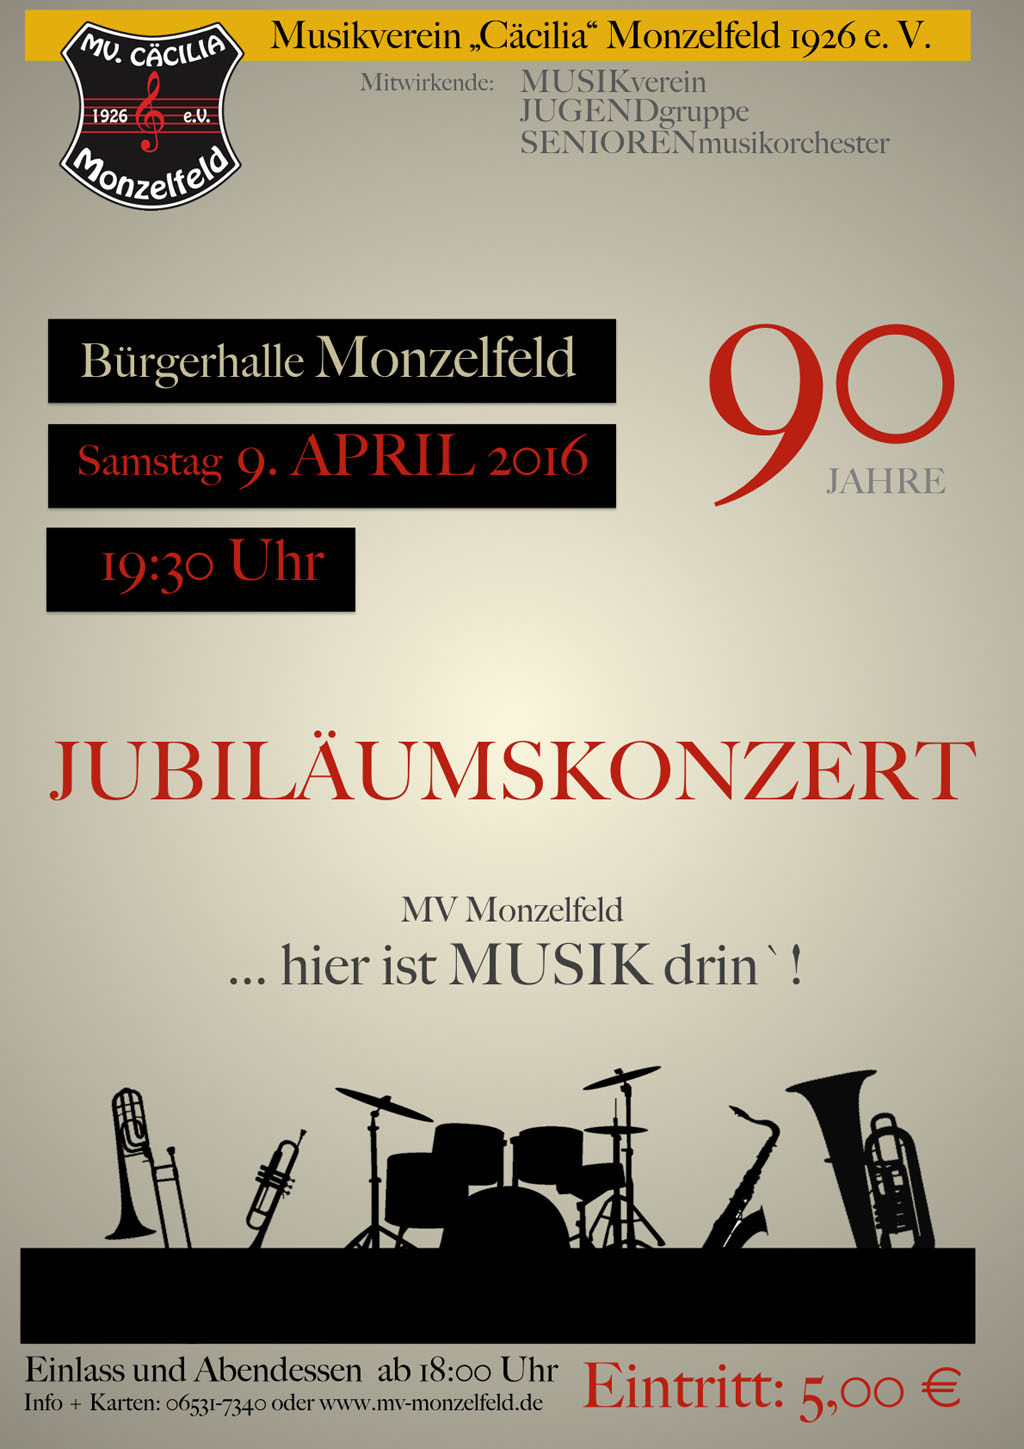 Jubiläumskonzert MV Monzelfeld